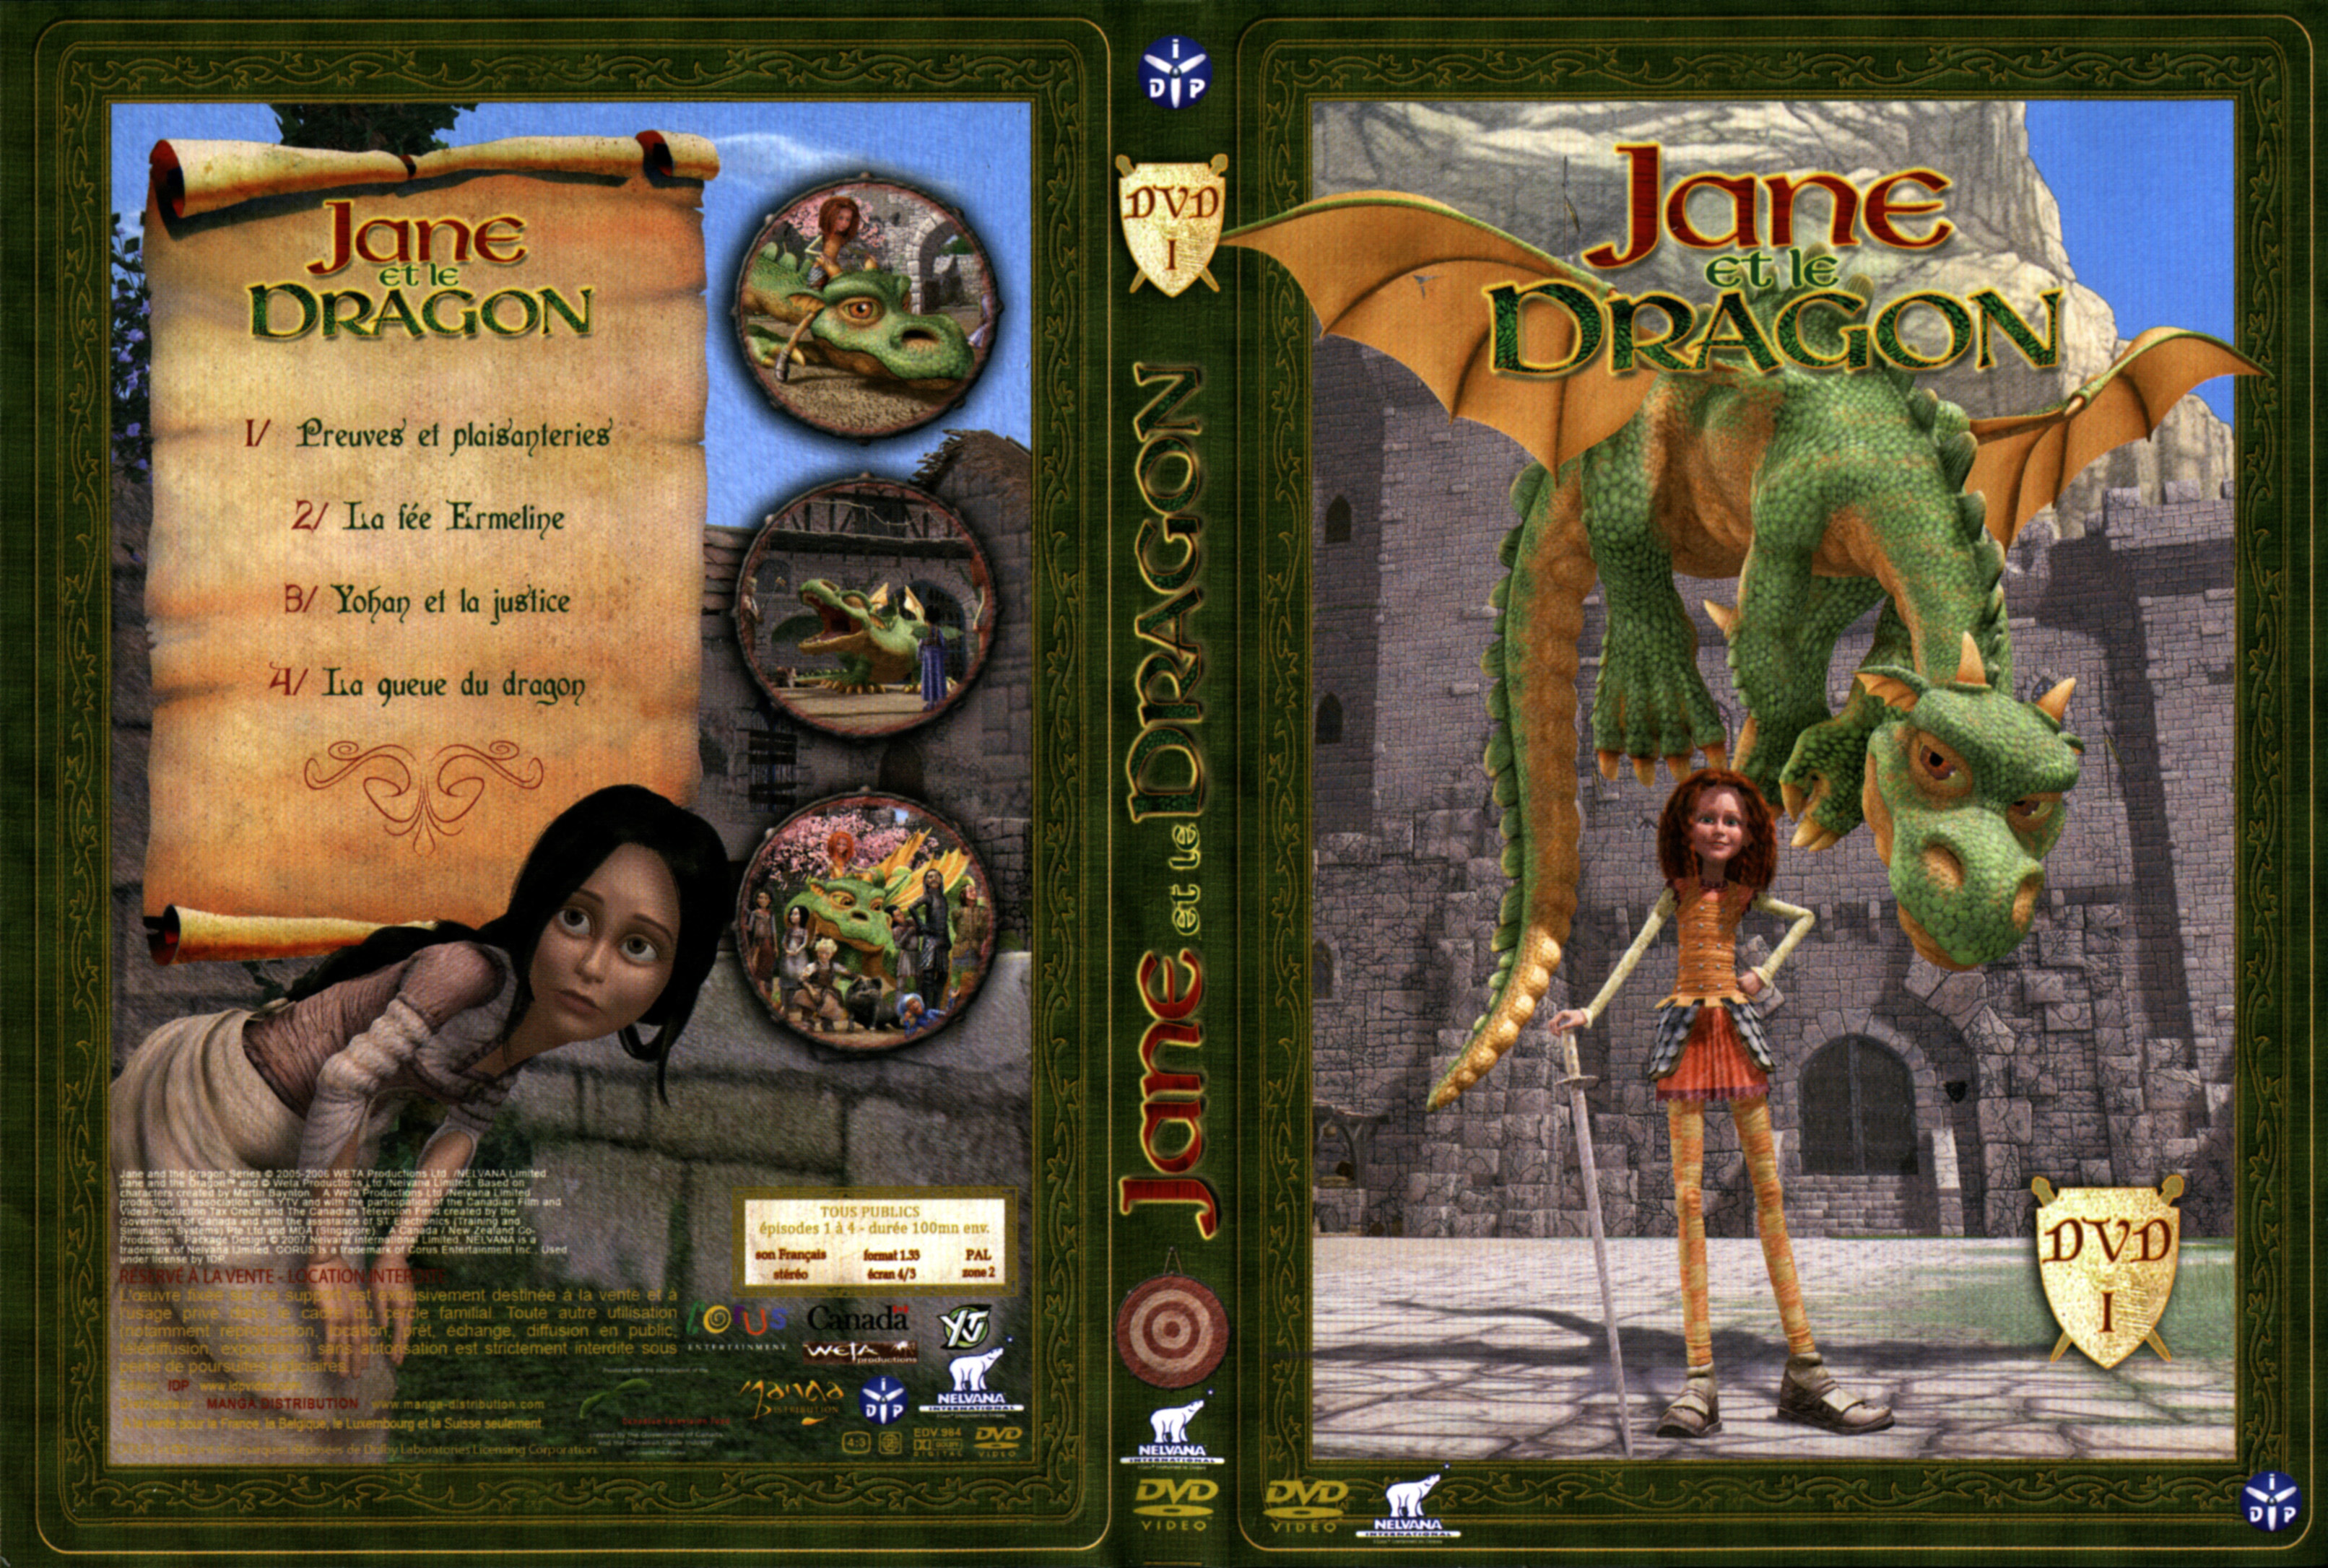 Jaquette DVD Jane et le Dragon vol 1